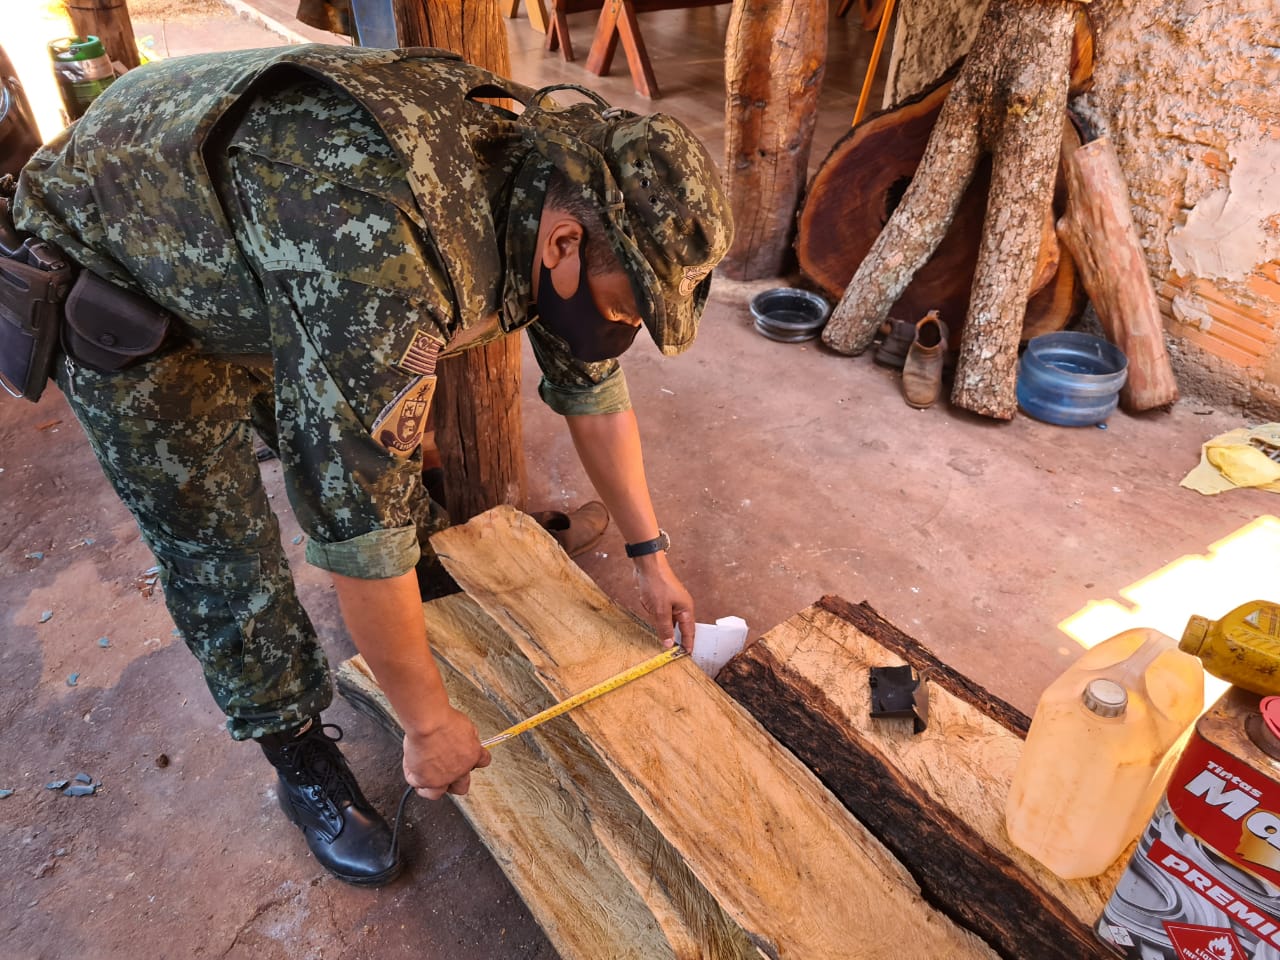 Desmatamento: foram encontradas 16 partes de árvores nativas e 0,76864m³ de prancha de madeira nativa depositadas na garagem da residência sem origem